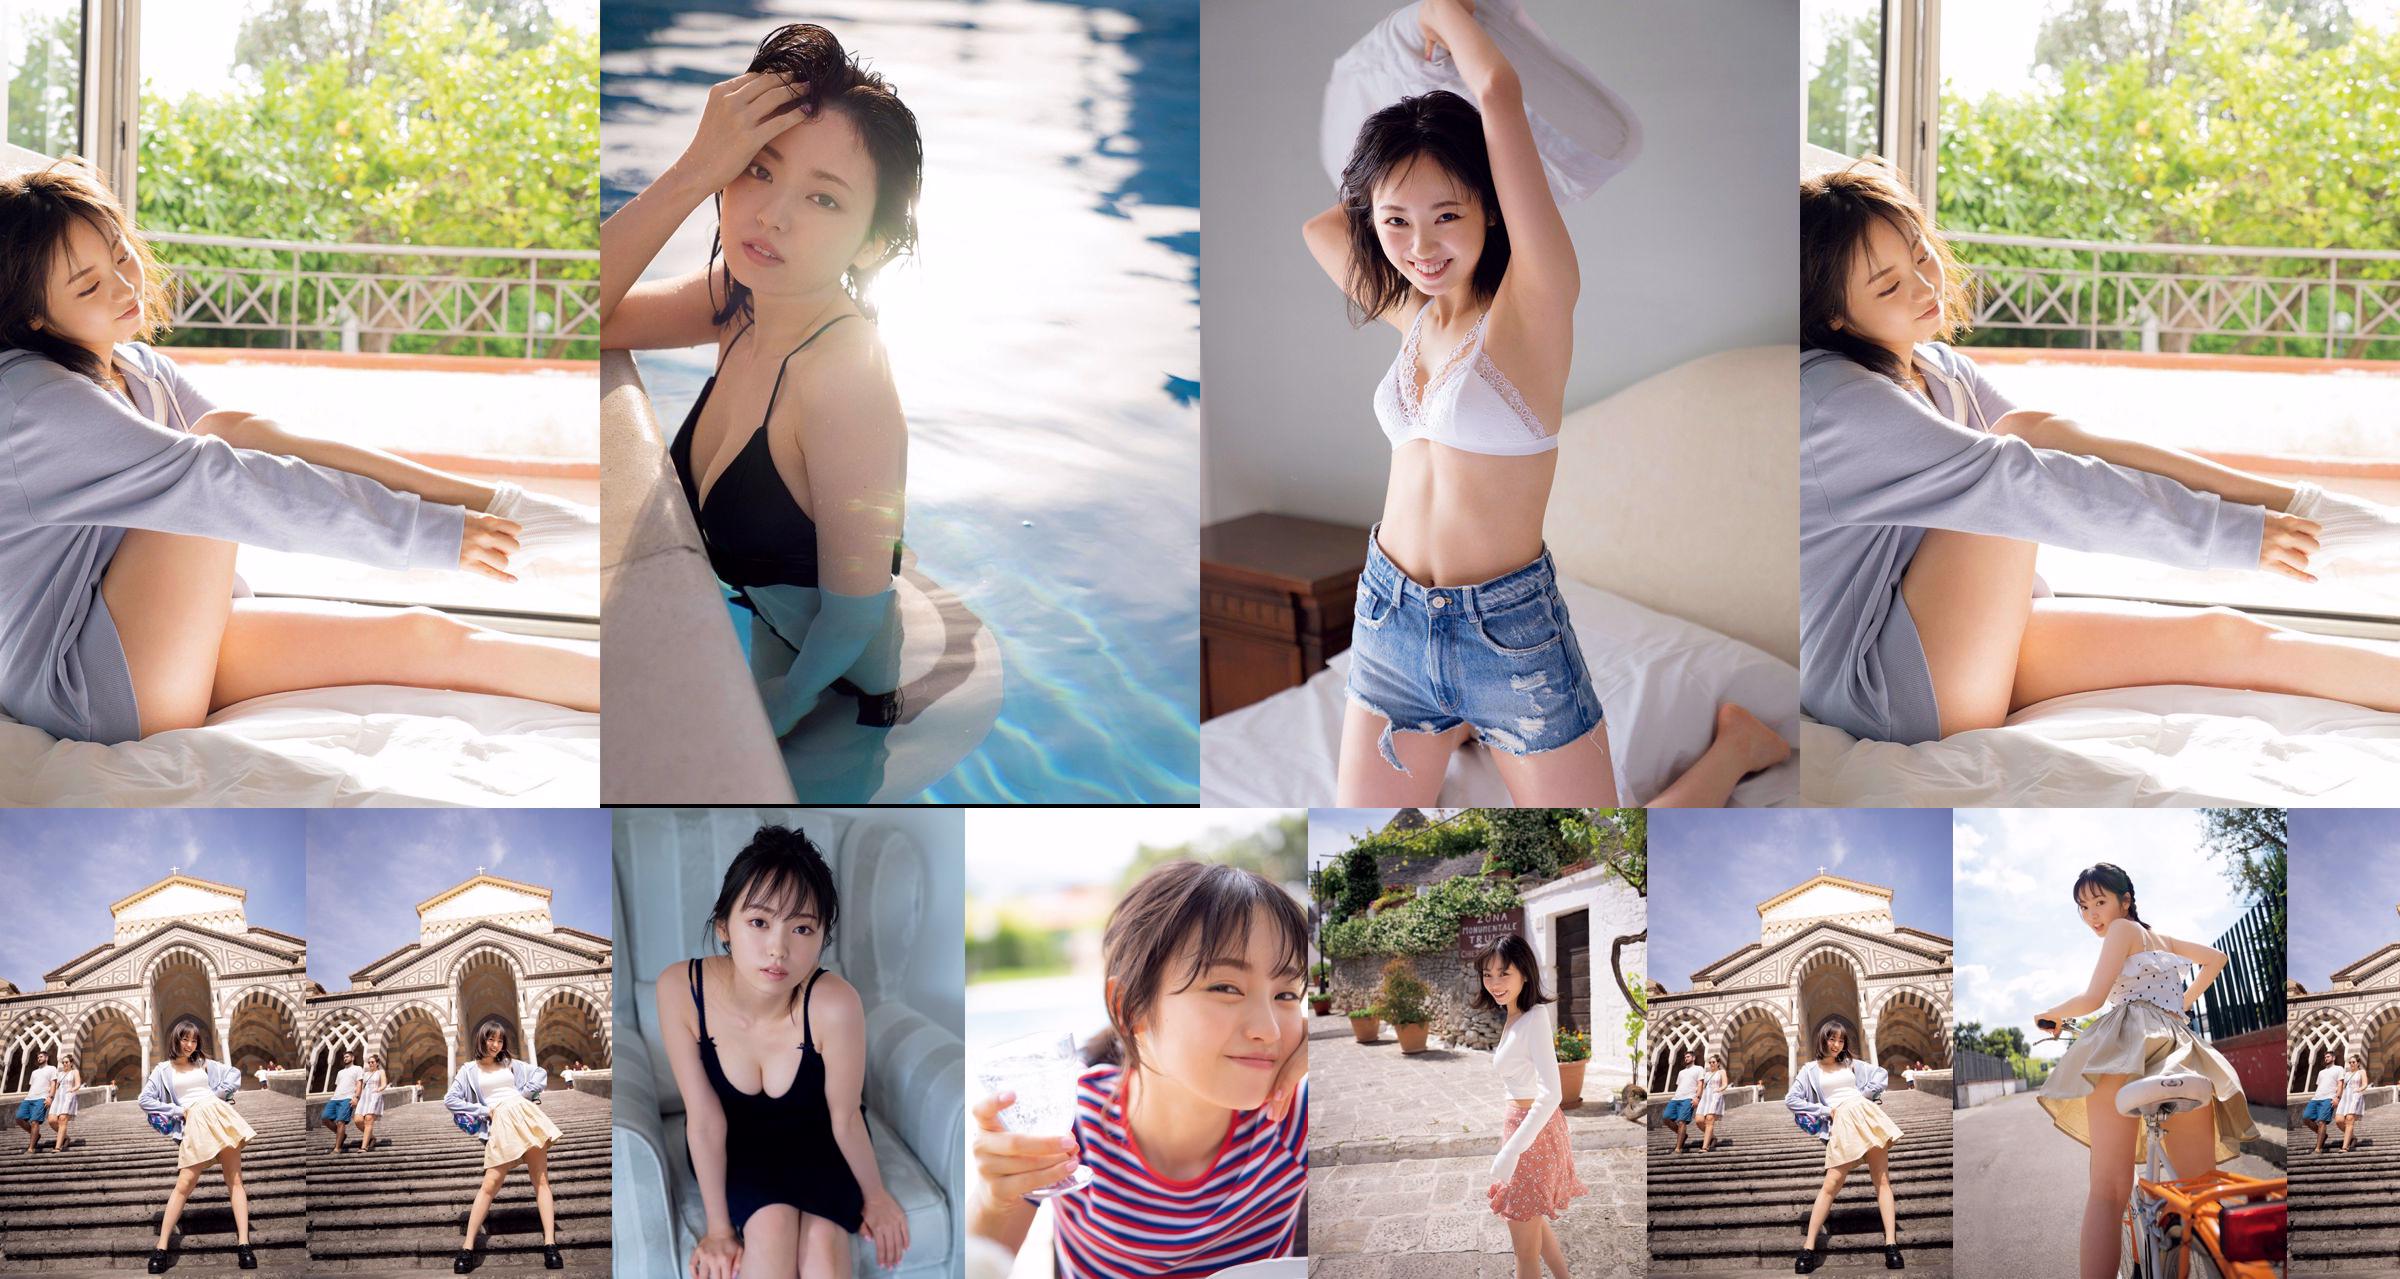 [วันศุกร์] Keyakizaka46, Yui Imaizumi "Swimsuit & Lingerie of" First and Last! "" รูปภาพ No.6496df หน้า 3